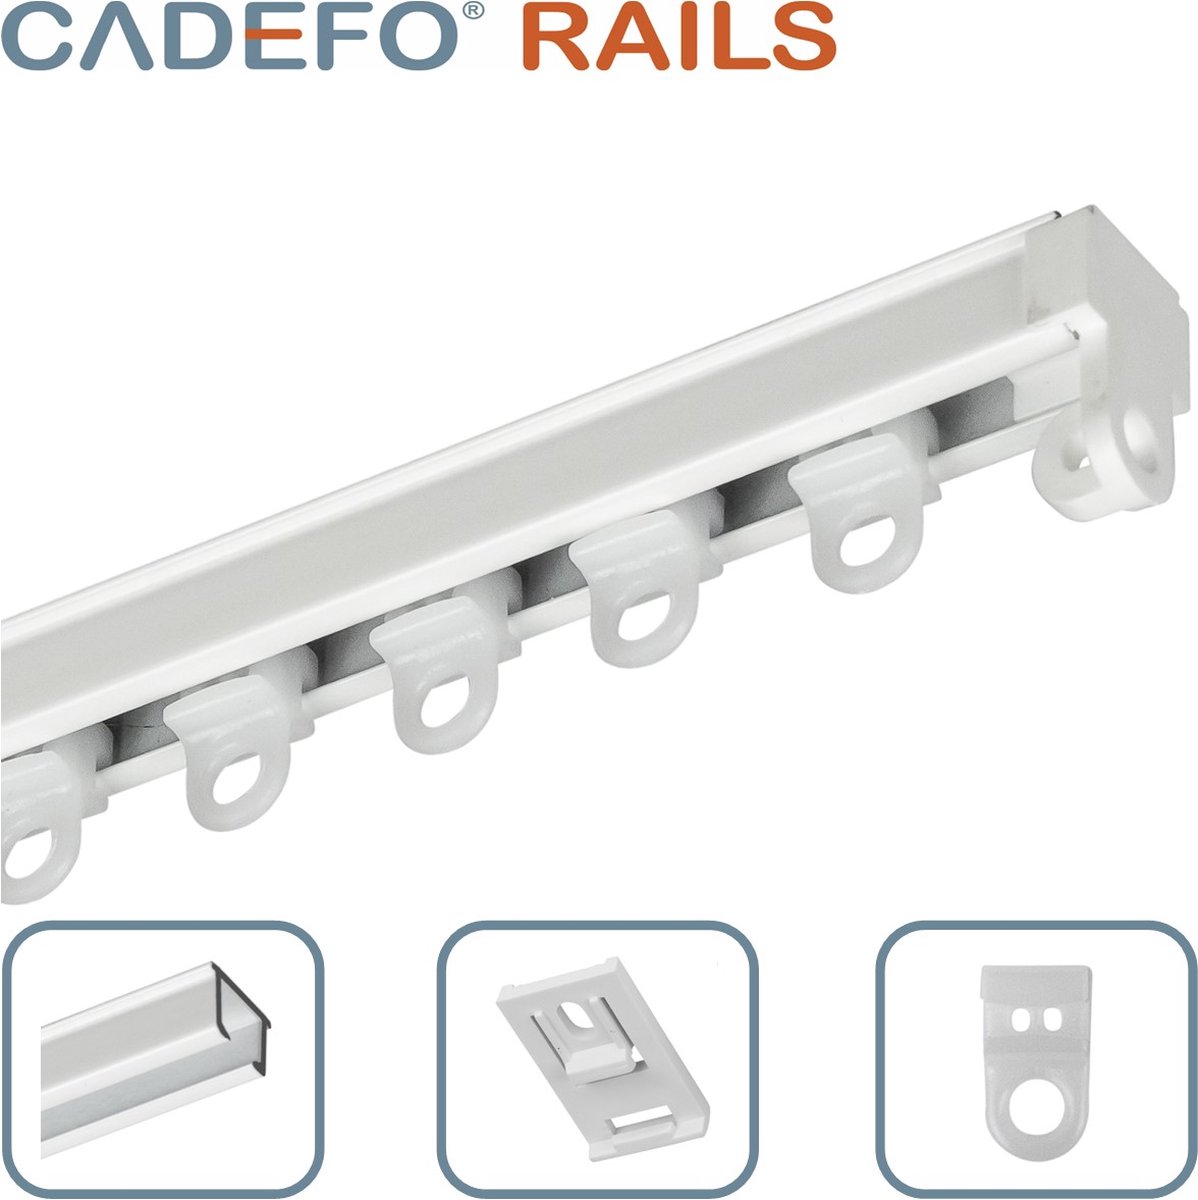 CADEFO RAILS (551 - 600 cm) Gordijnrails - Compleet op maat! - UIT 1 STUK - Leverbaar tot 6 meter - Plafondbevestiging - Lengte 593 cm